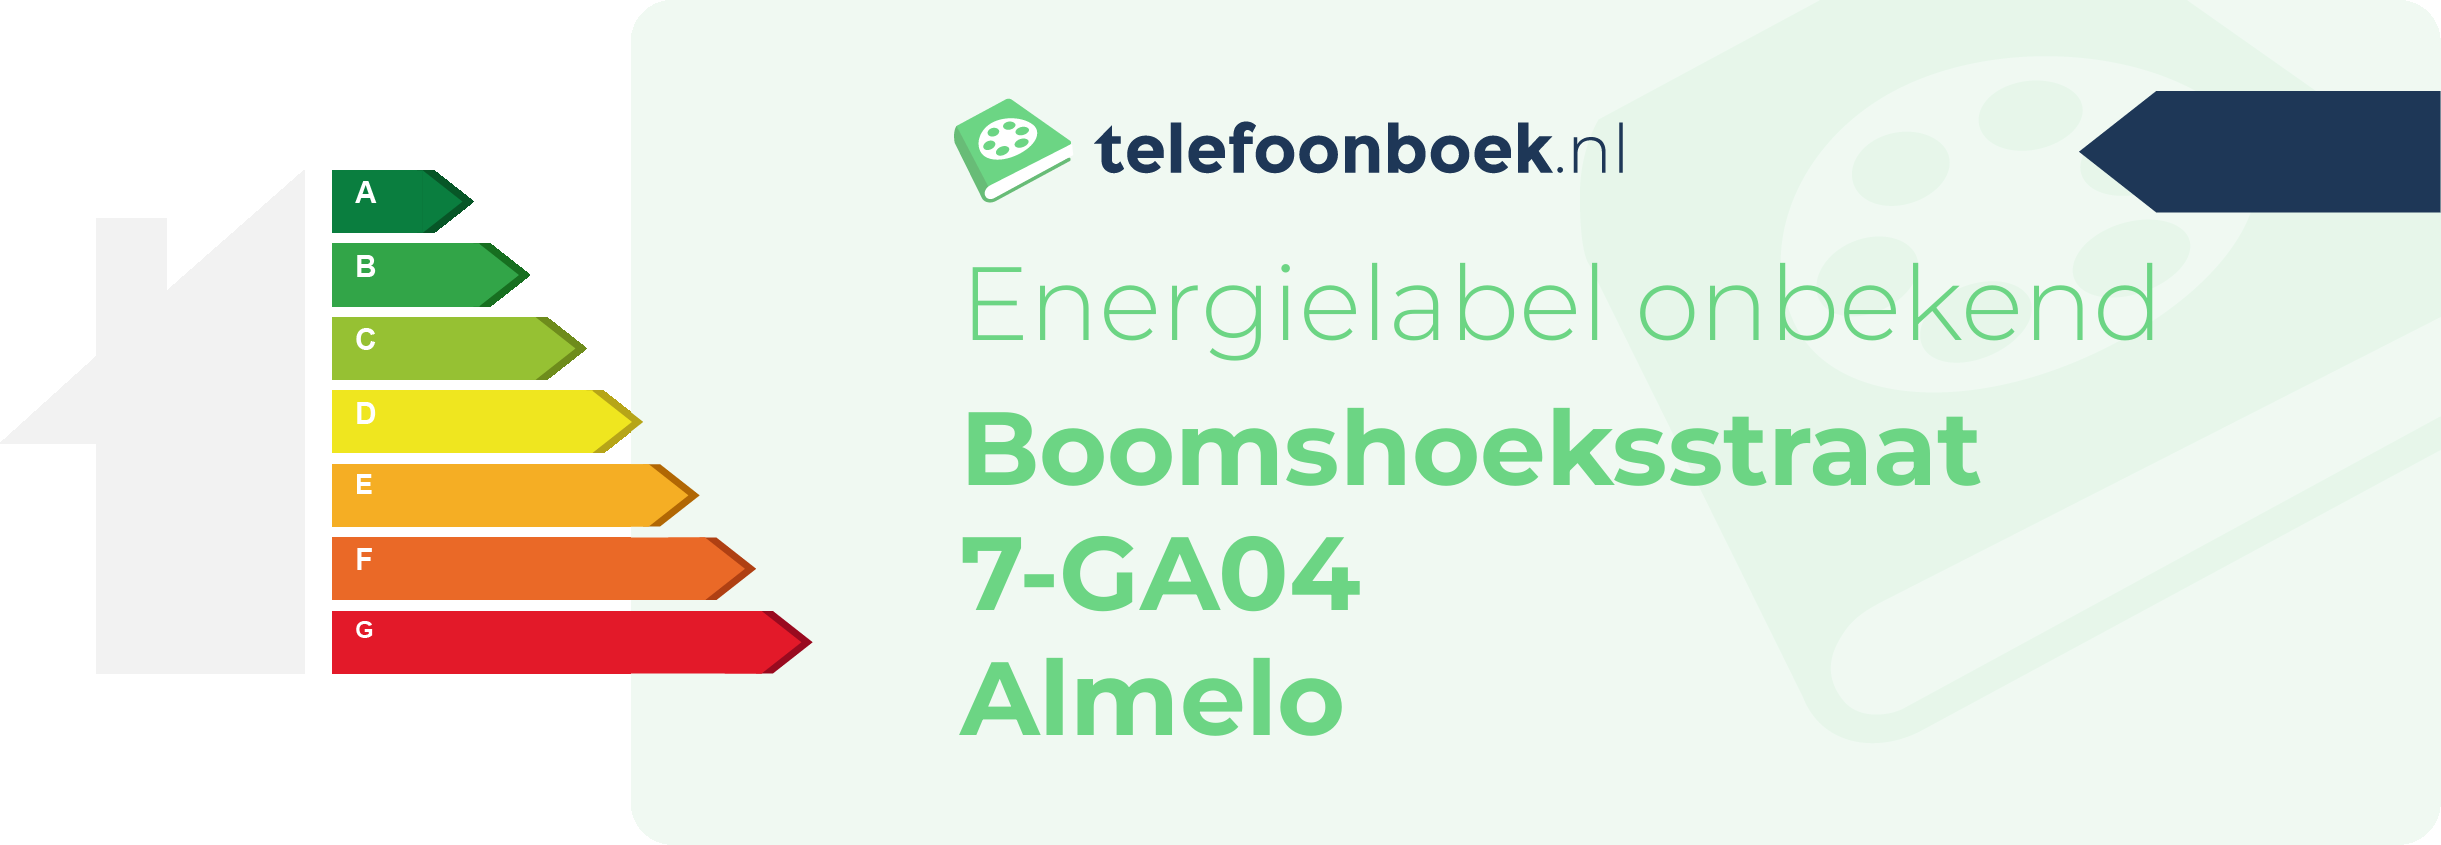 Energielabel Boomshoeksstraat 7-GA04 Almelo